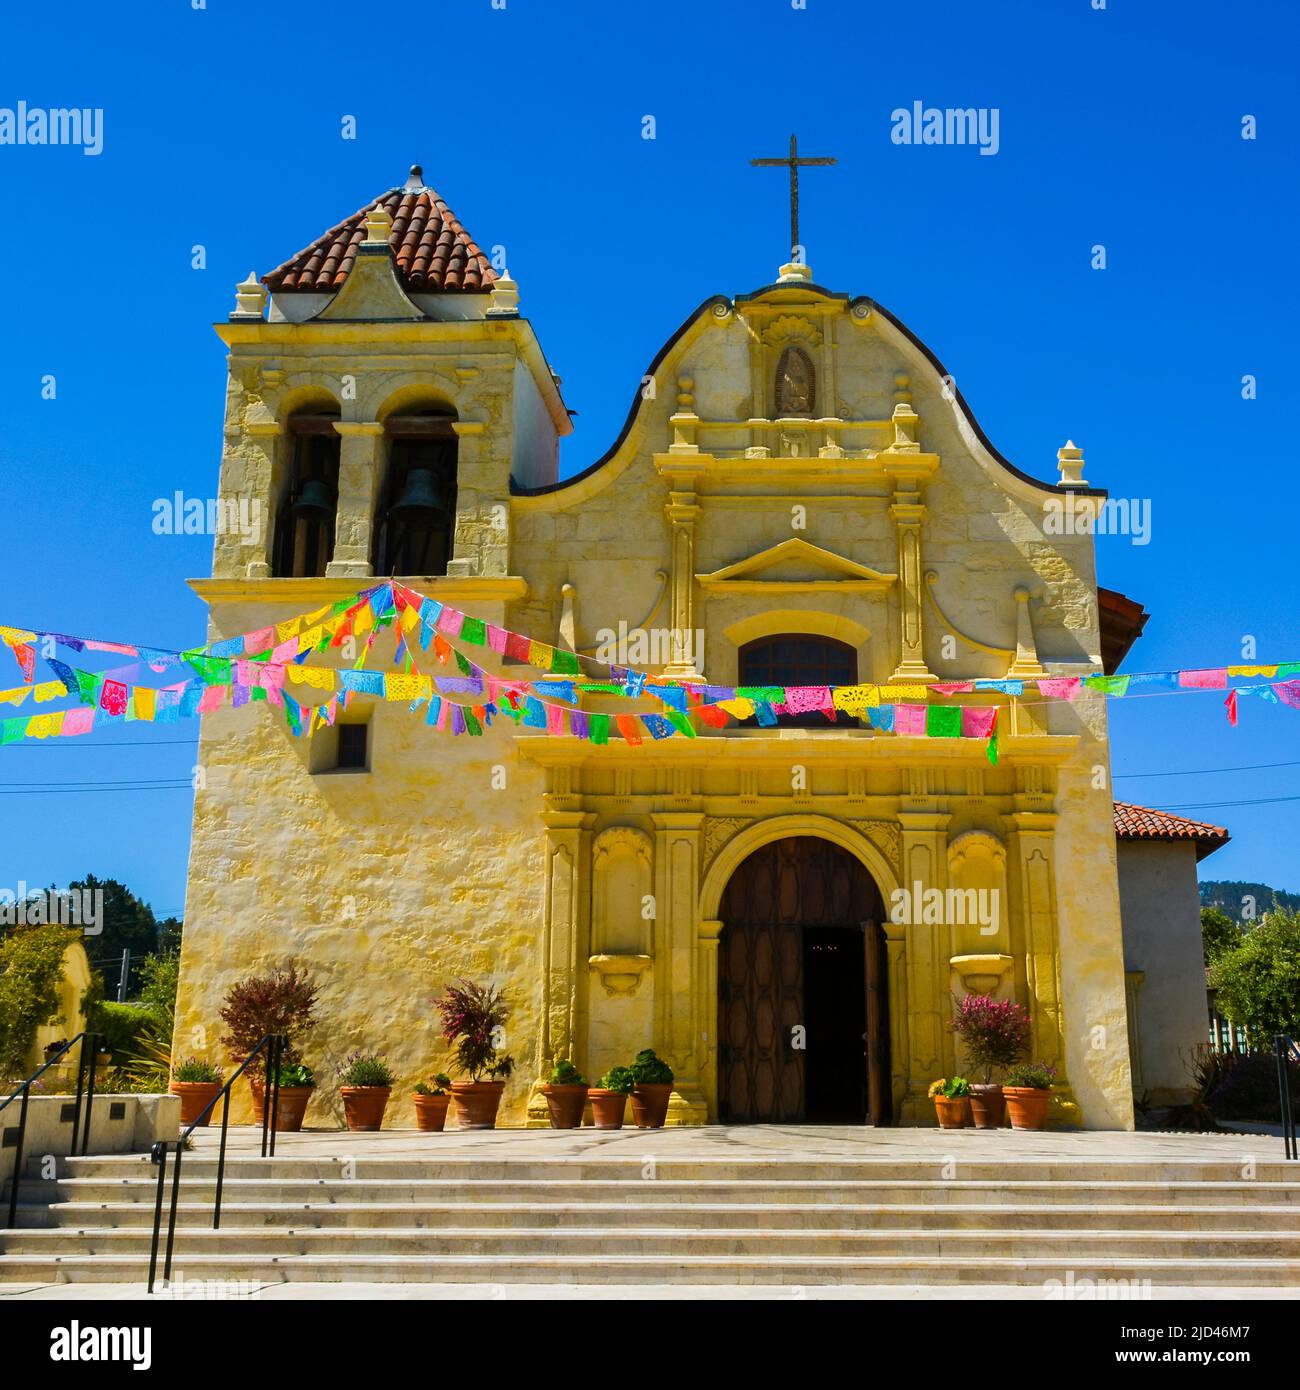 La cathédrale de San Carlos Borromeo, également connue sous le nom de chapelle royale Presidio - Monterey, Californie. C'est un site historique national des États-Unis. Banque D'Images